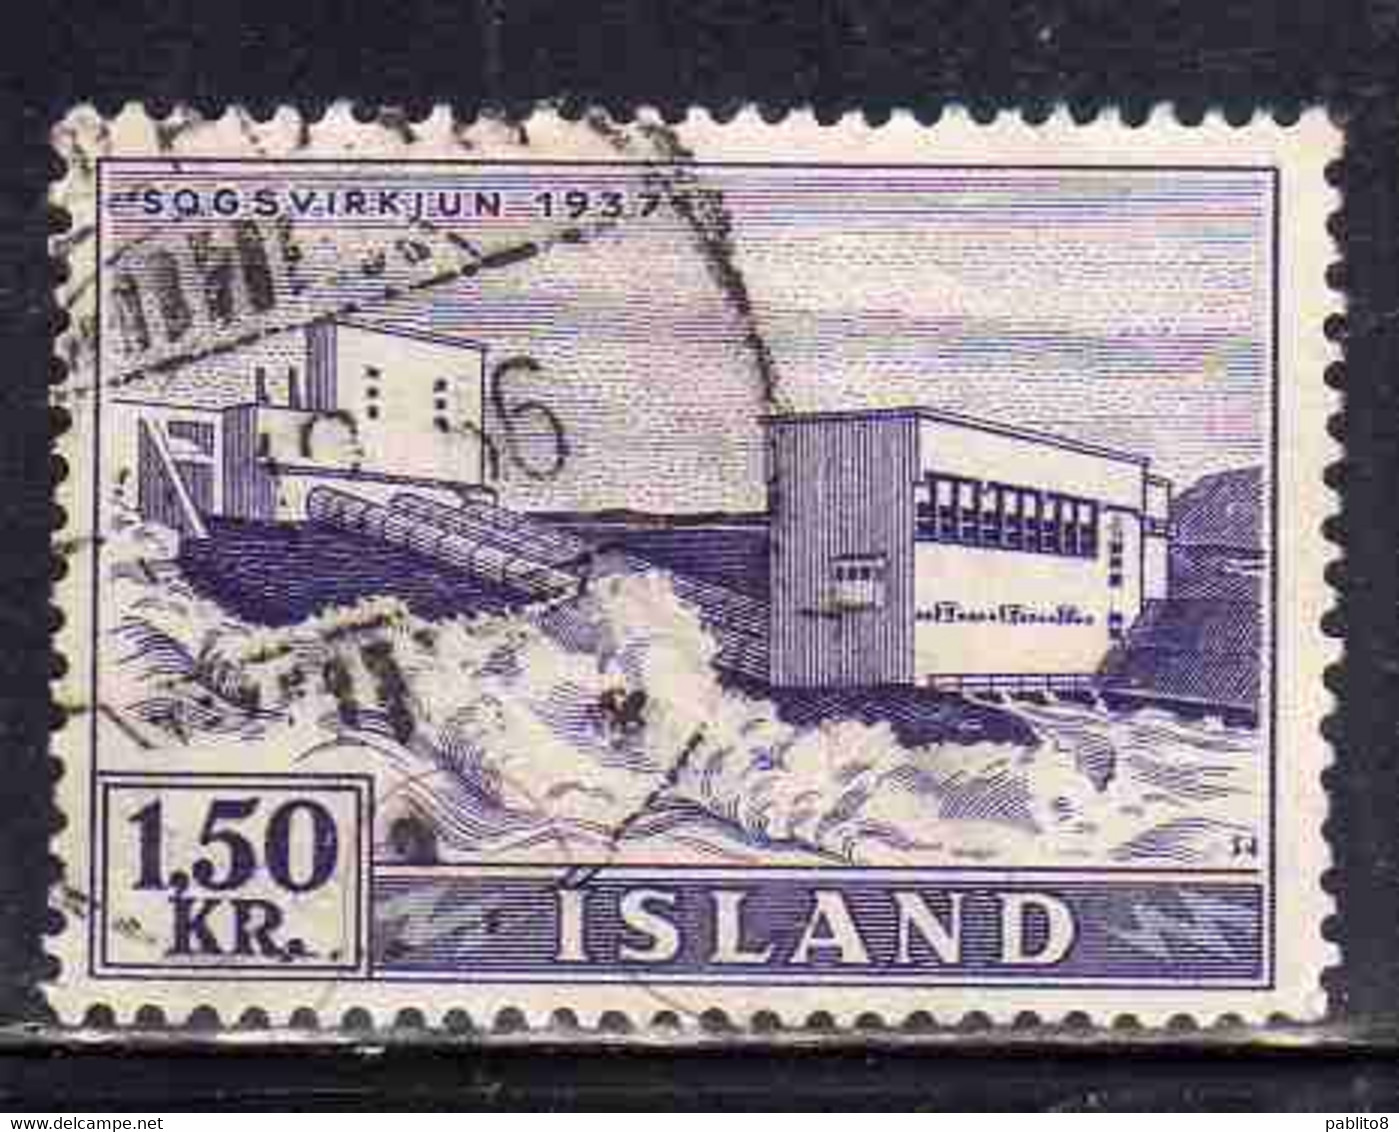 ISLANDA ICELAND ISLANDE 1956 WATERFALLS SOGS 1.50k USED USATO OBLITERE' - Poste Aérienne